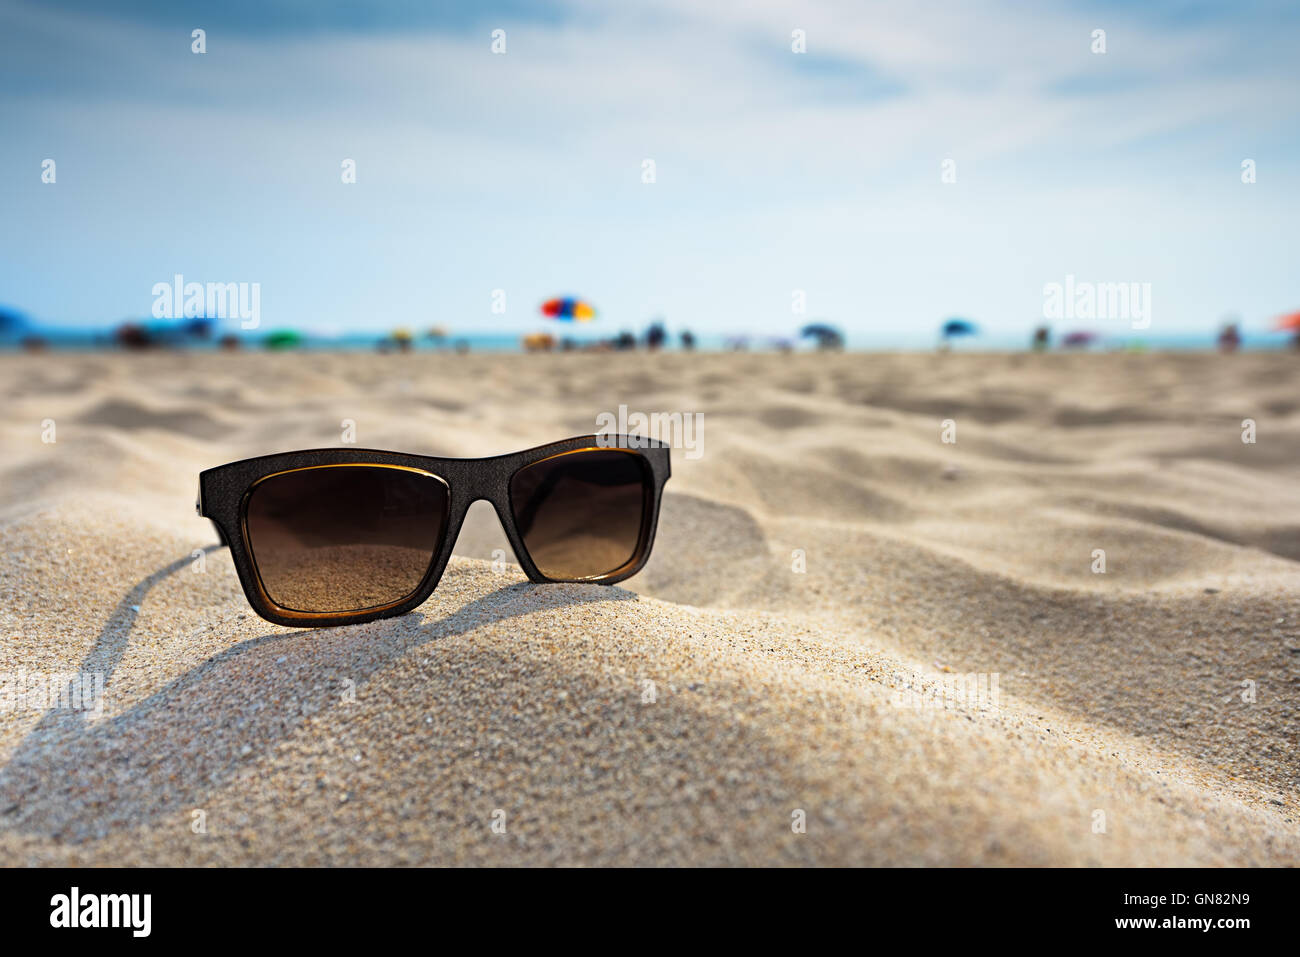 Sun glasses lie on a beach near the sea. Stock Photo